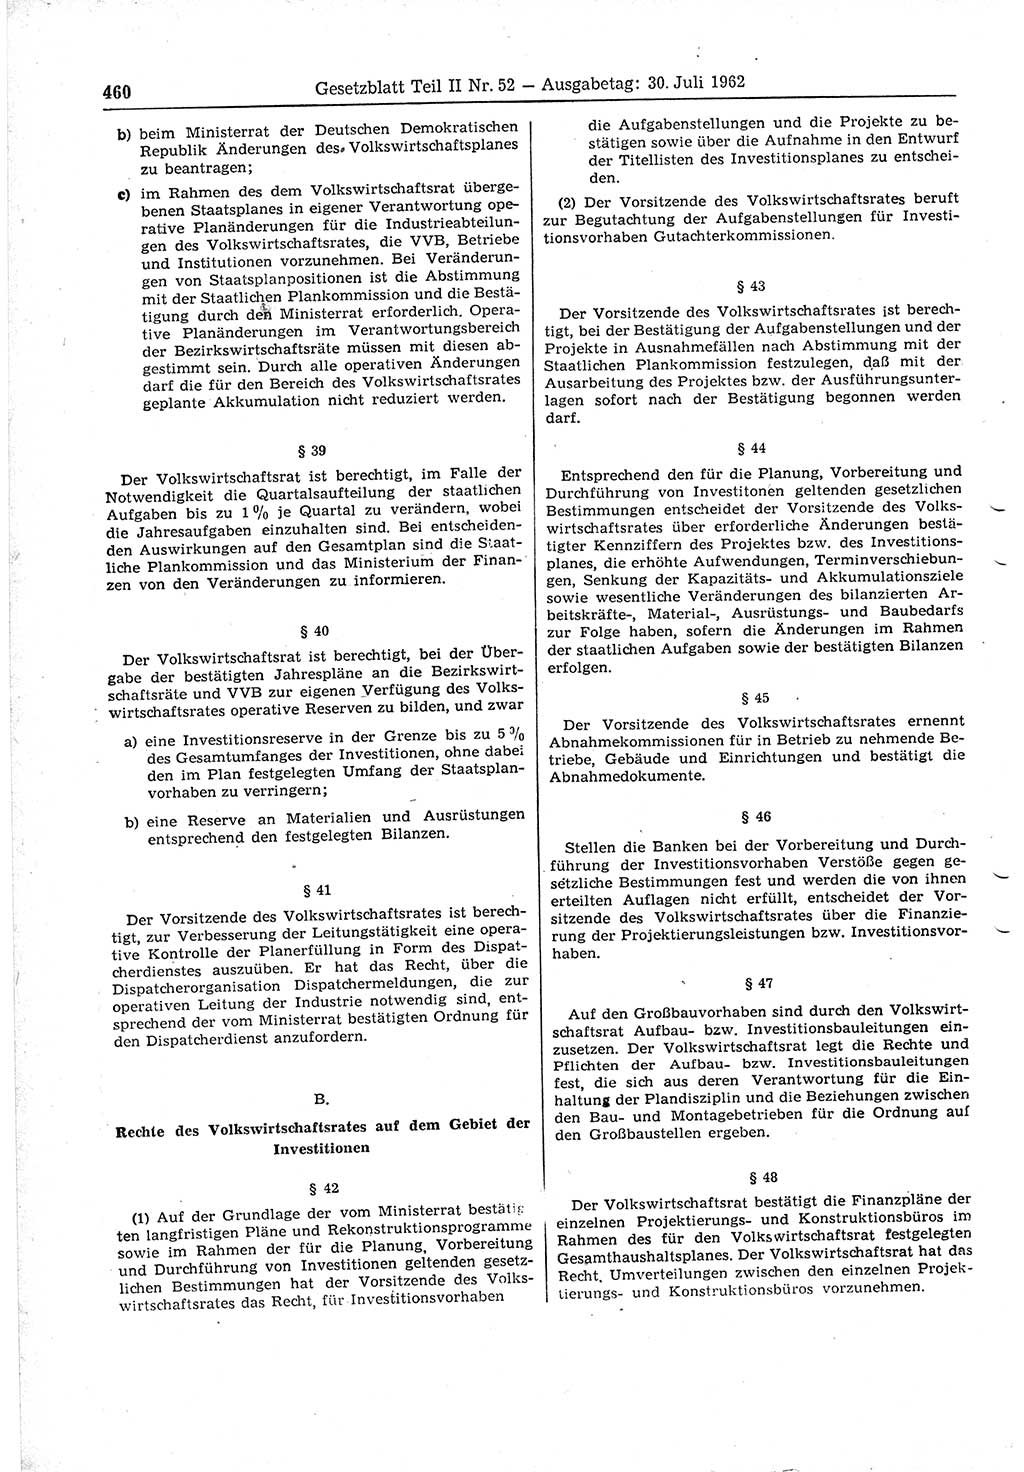 Gesetzblatt (GBl.) der Deutschen Demokratischen Republik (DDR) Teil ⅠⅠ 1962, Seite 460 (GBl. DDR ⅠⅠ 1962, S. 460)